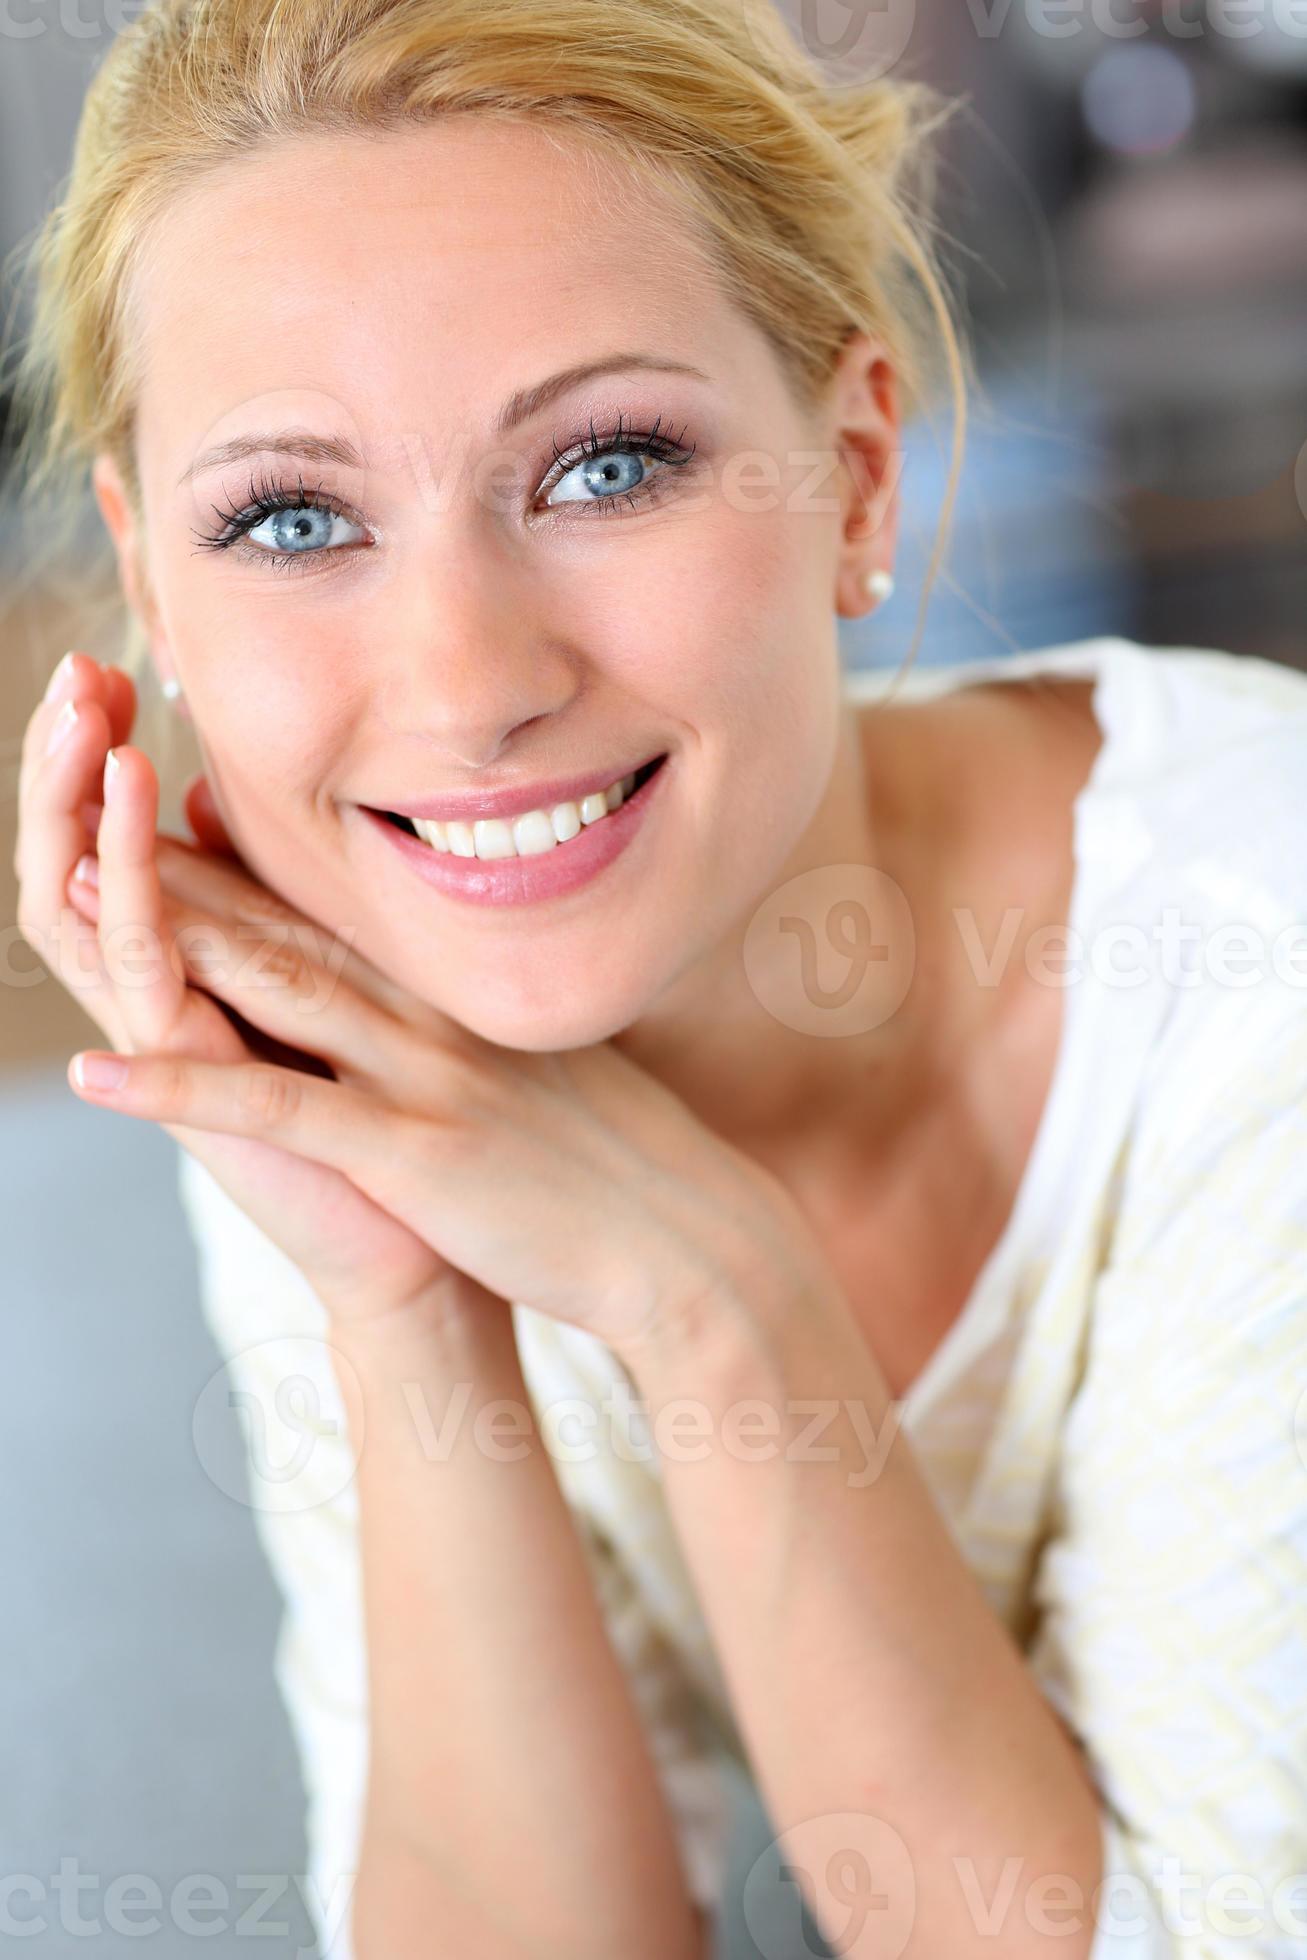 Egypte Zeep Rauw close-up van vrolijke blonde vrouw met blauwe ogen 945294 Stockfoto